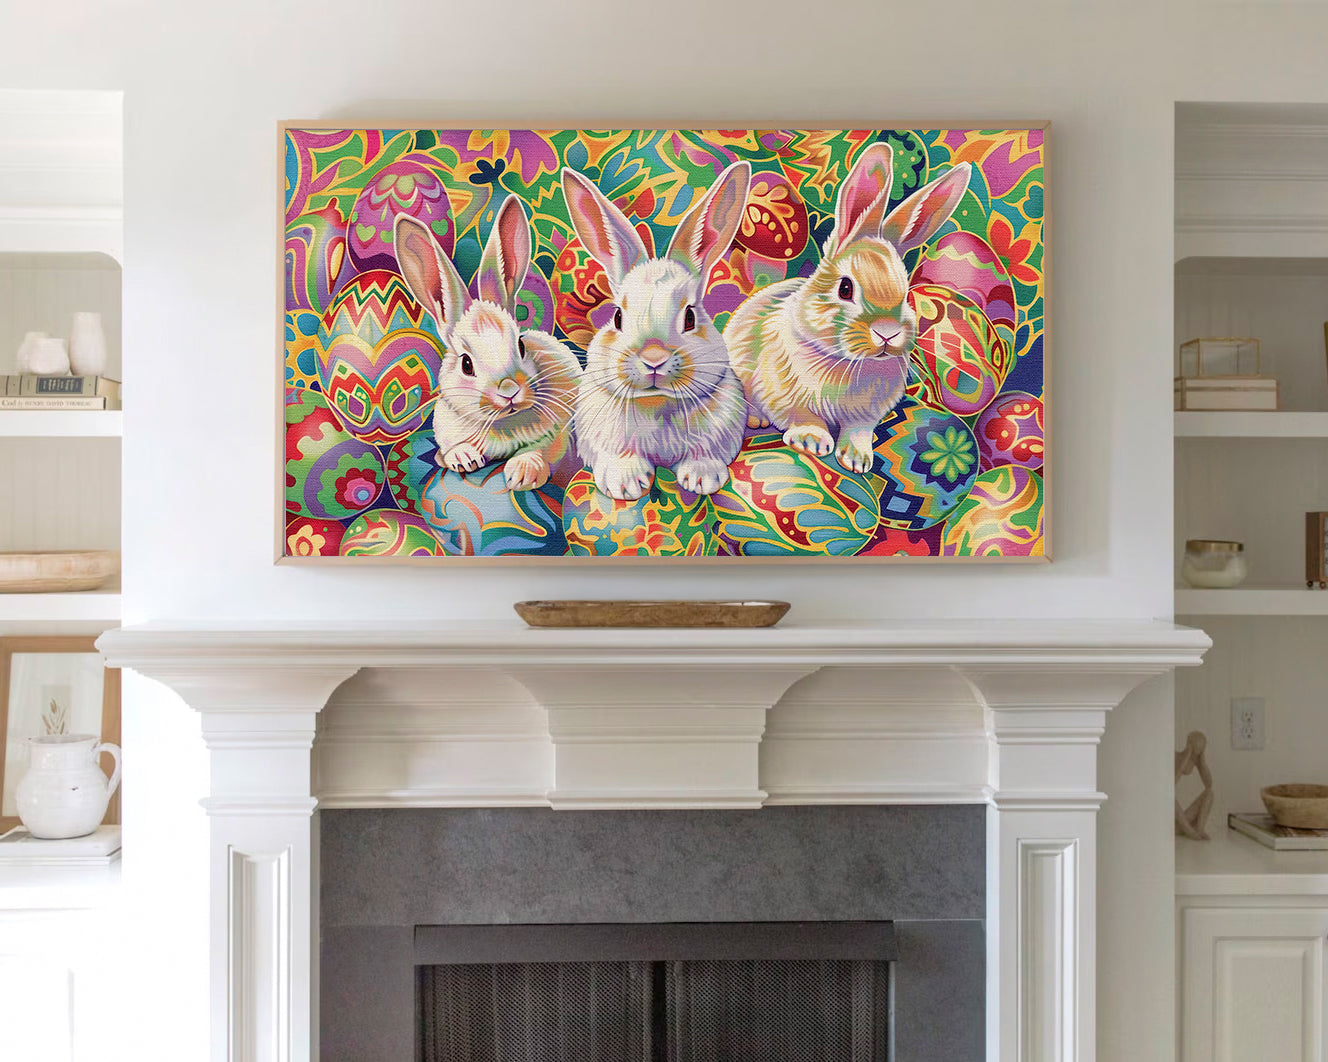 Artistic Easter Bunny and Egg Frame TV Wallpaper for Easter Decor